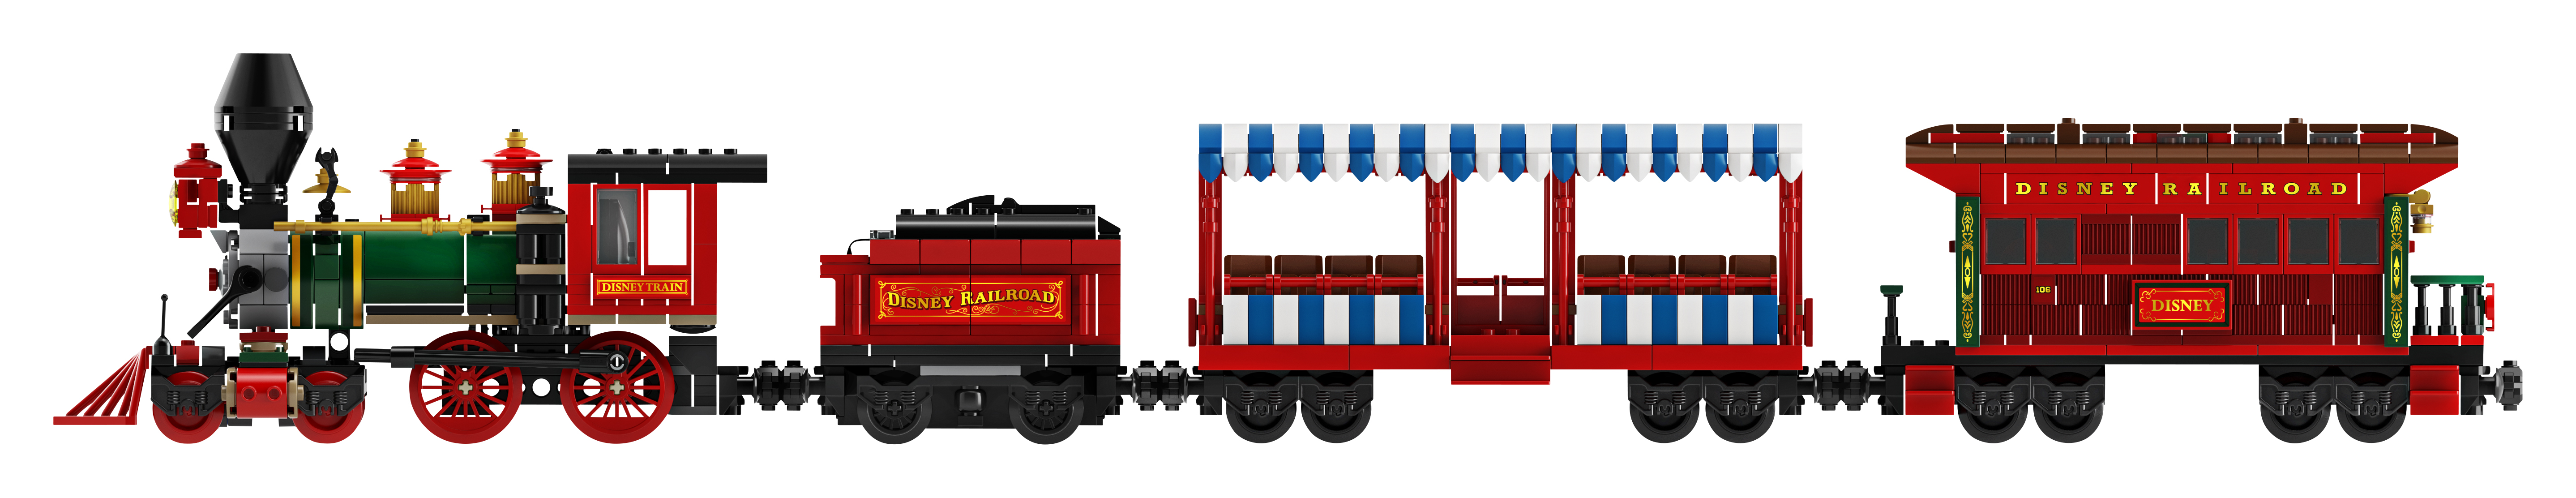 new lego disney train